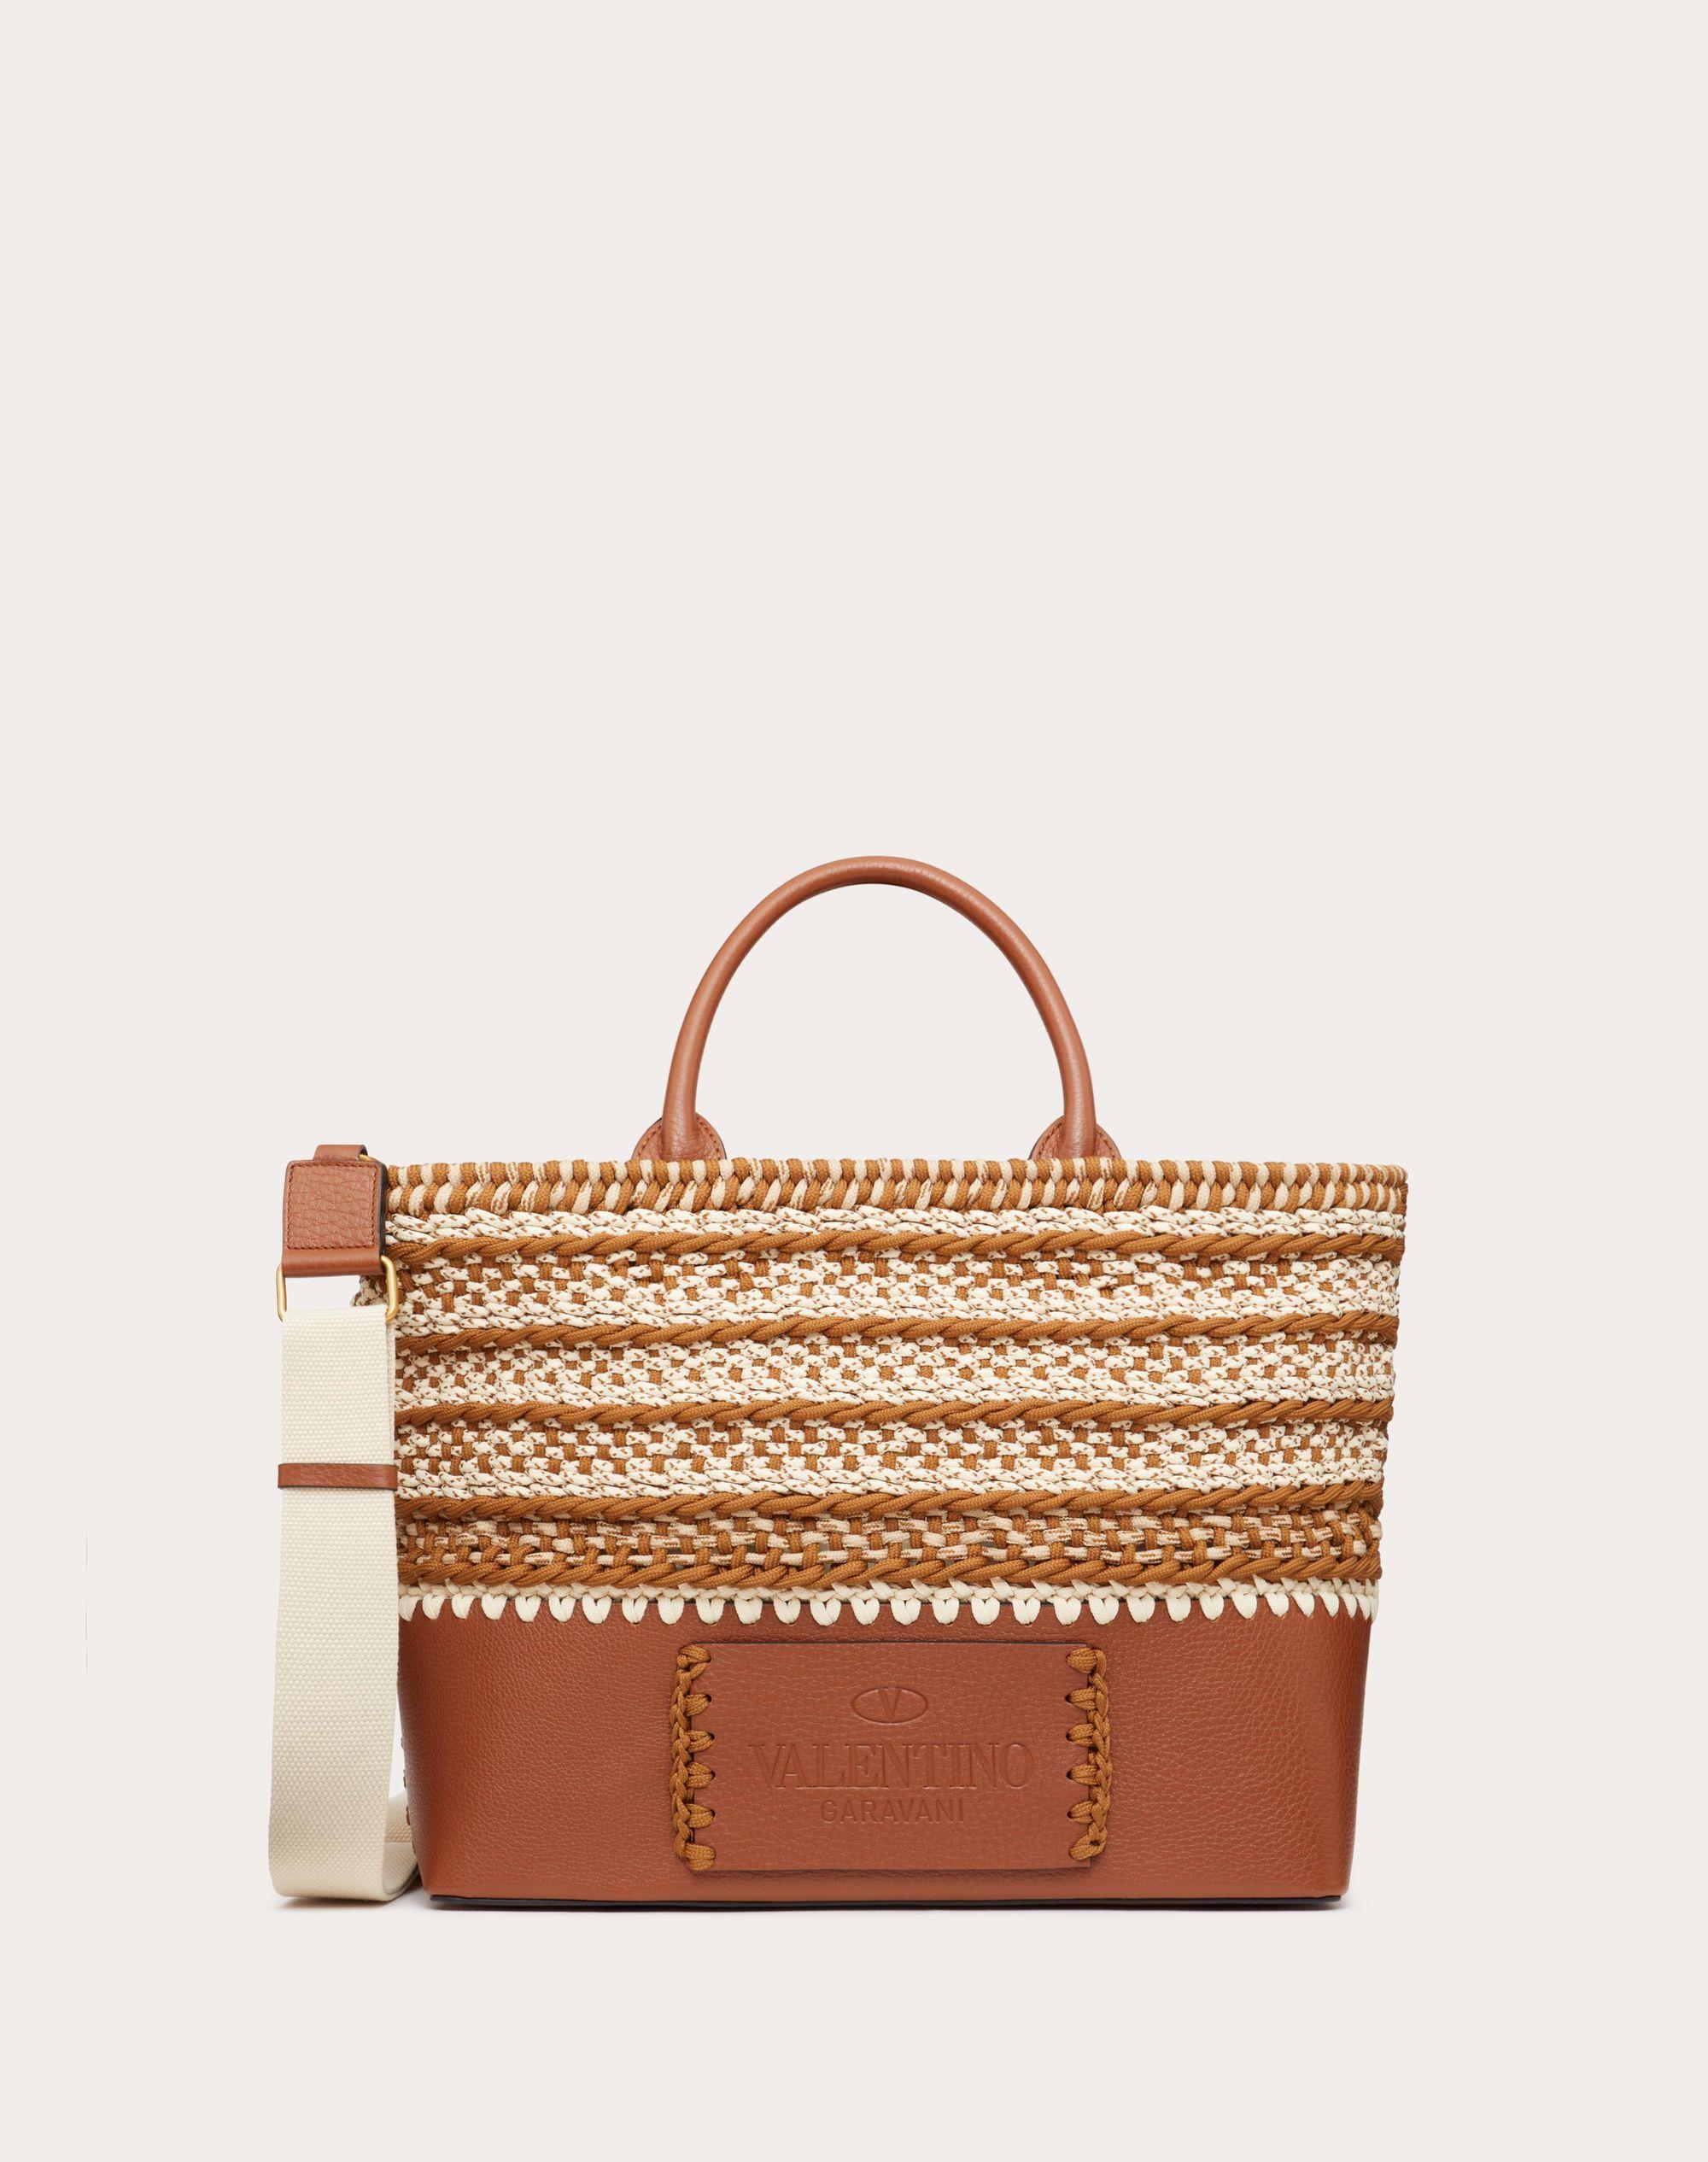 Valentino Garavani Leather Small Crochet Bags Fabric Tote in Brown 